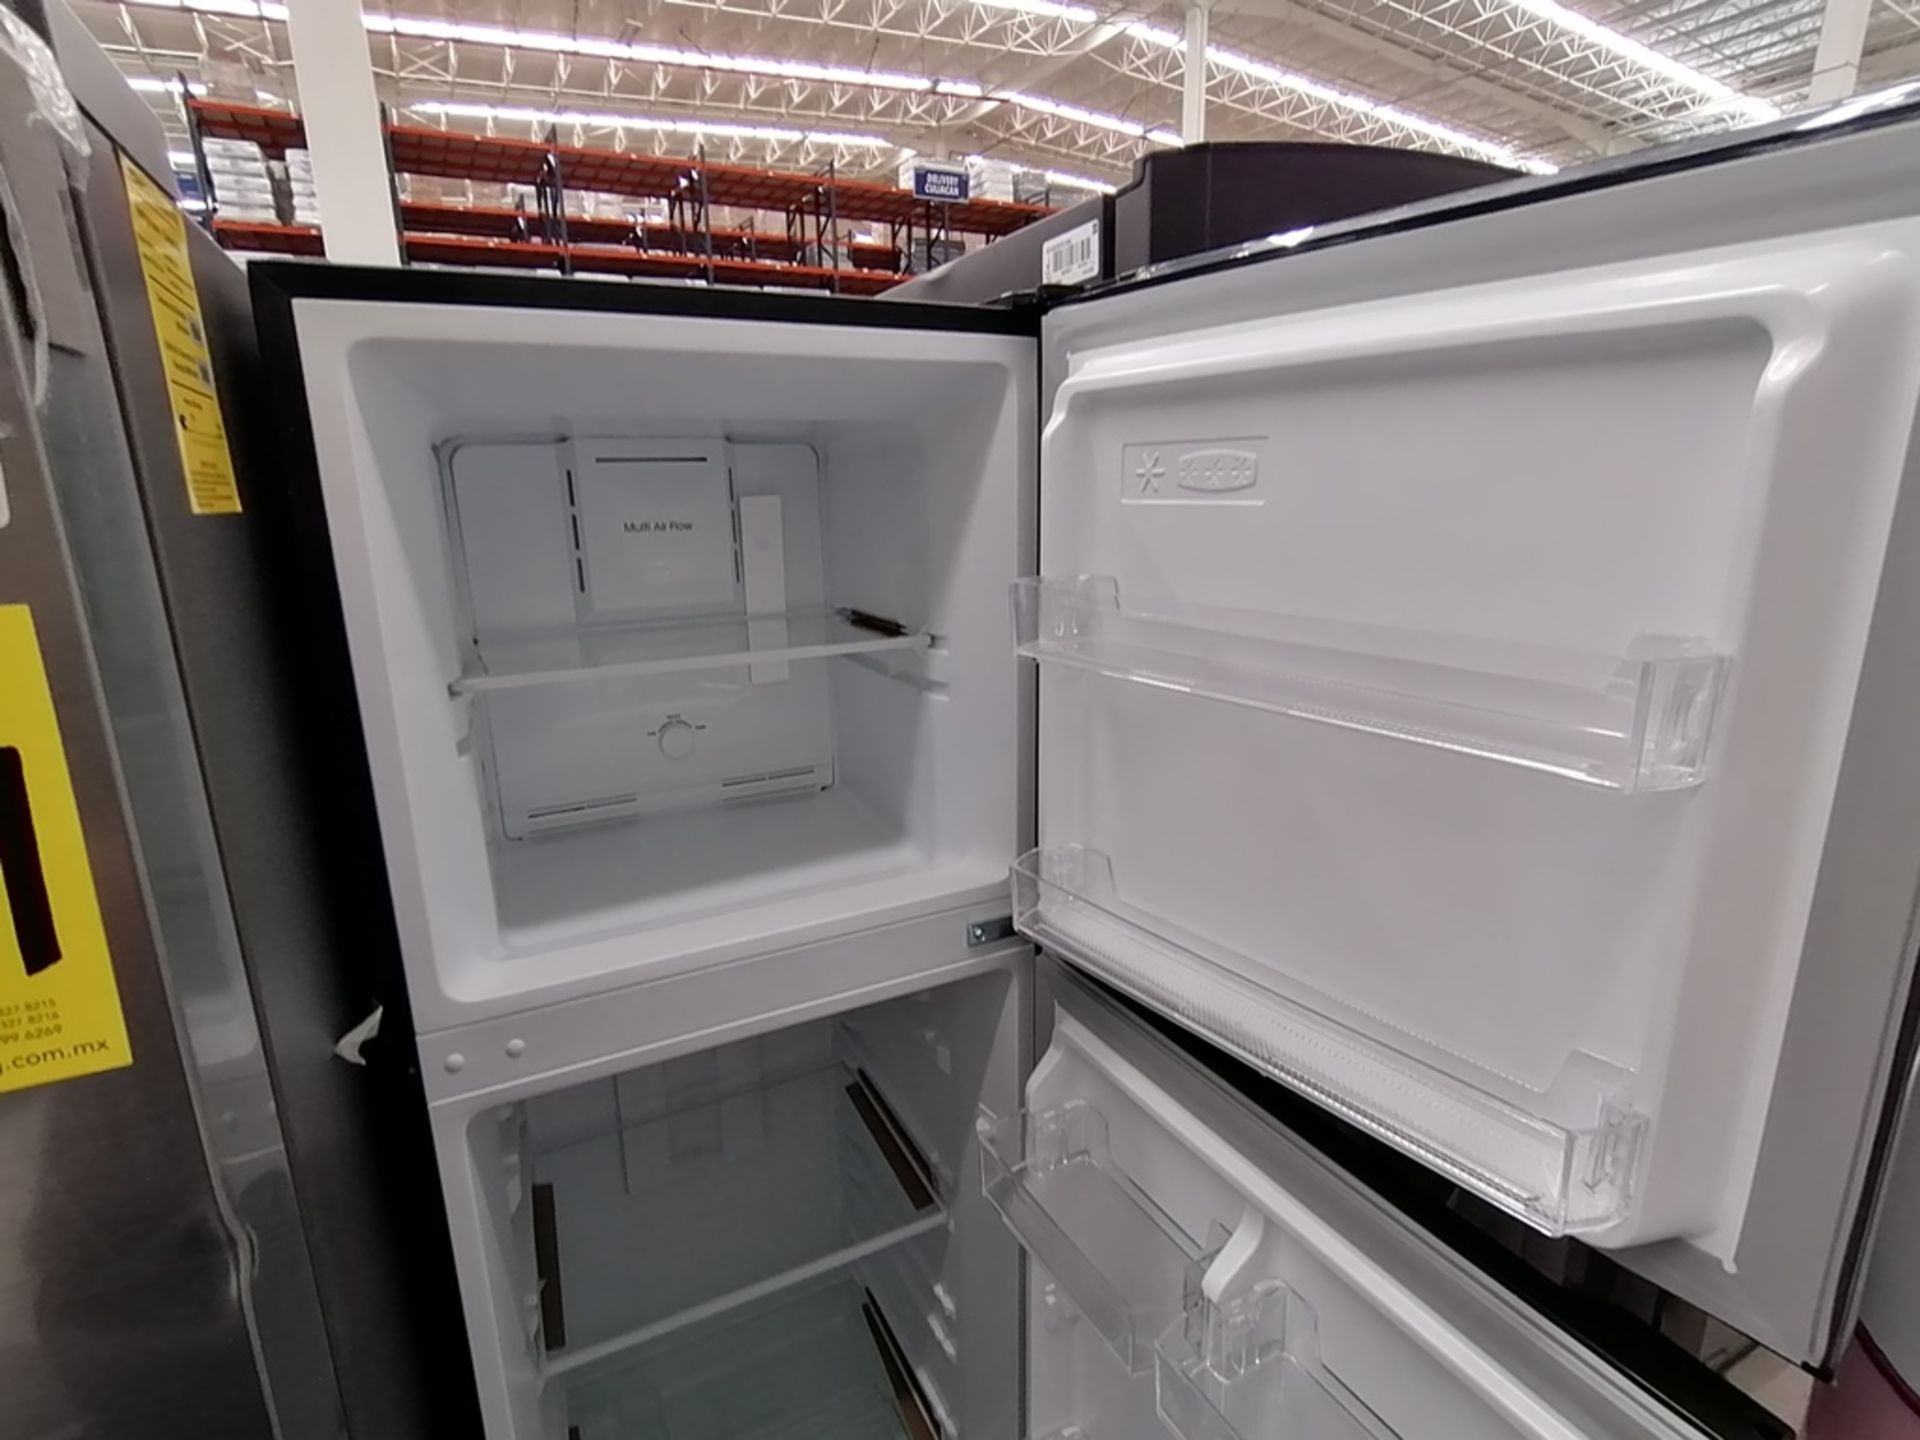 Lote de 2 refrigeradores incluye: 1 Refrigerador, Marca Midea, Modelo MRTN09G2NCS, Serie 341B261870 - Image 4 of 15